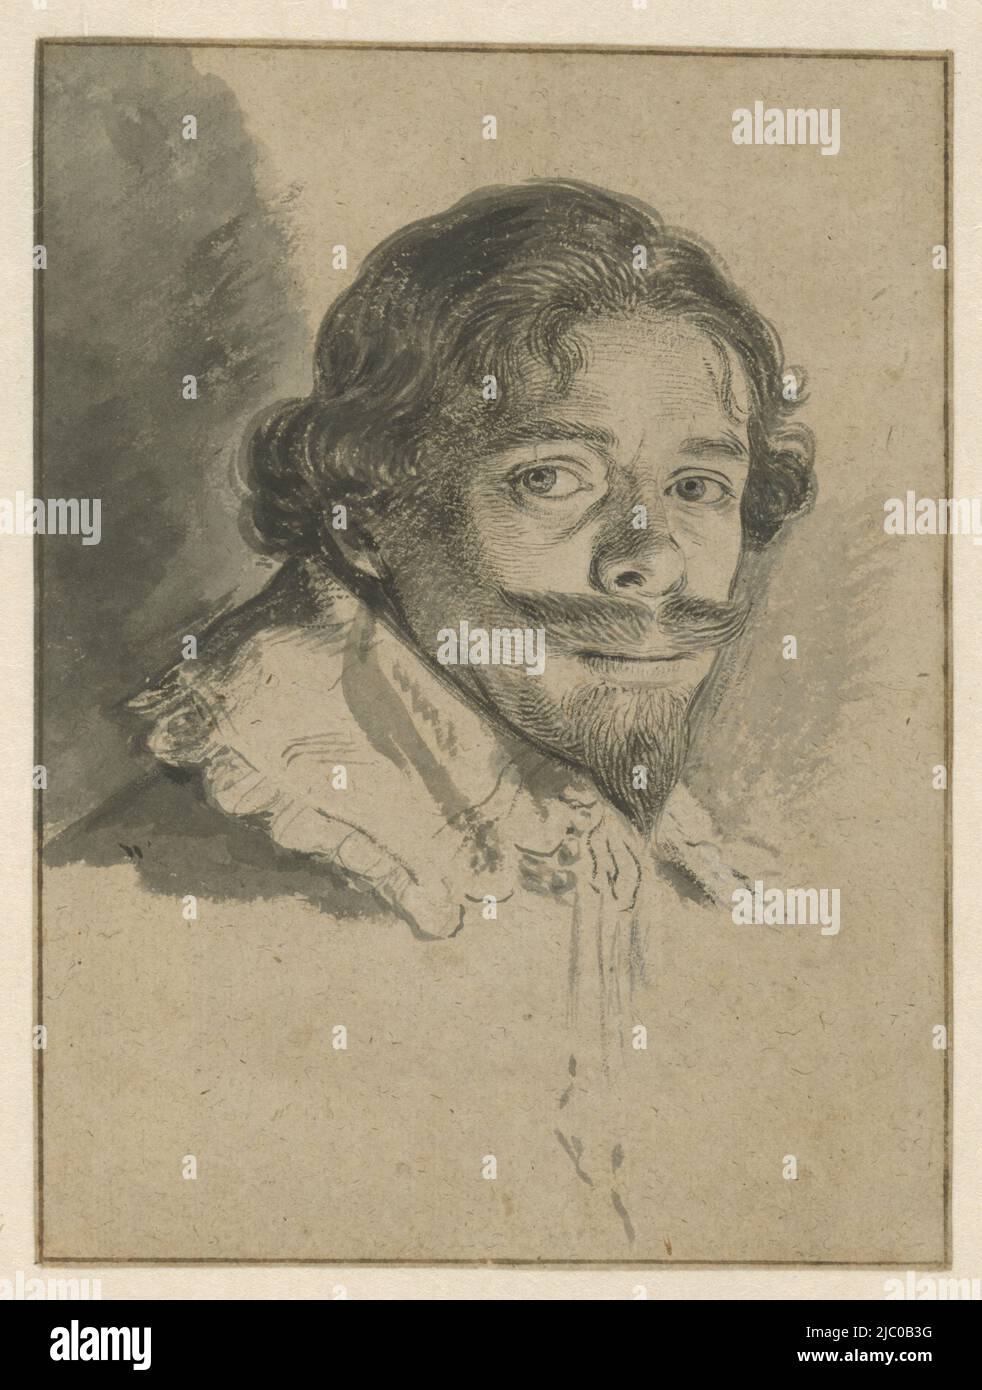 Autoportrait de David Bailly, rapporteur: David Bailly, 1626, papier, pinceau, h 164 mm × l 122 mm Banque D'Images